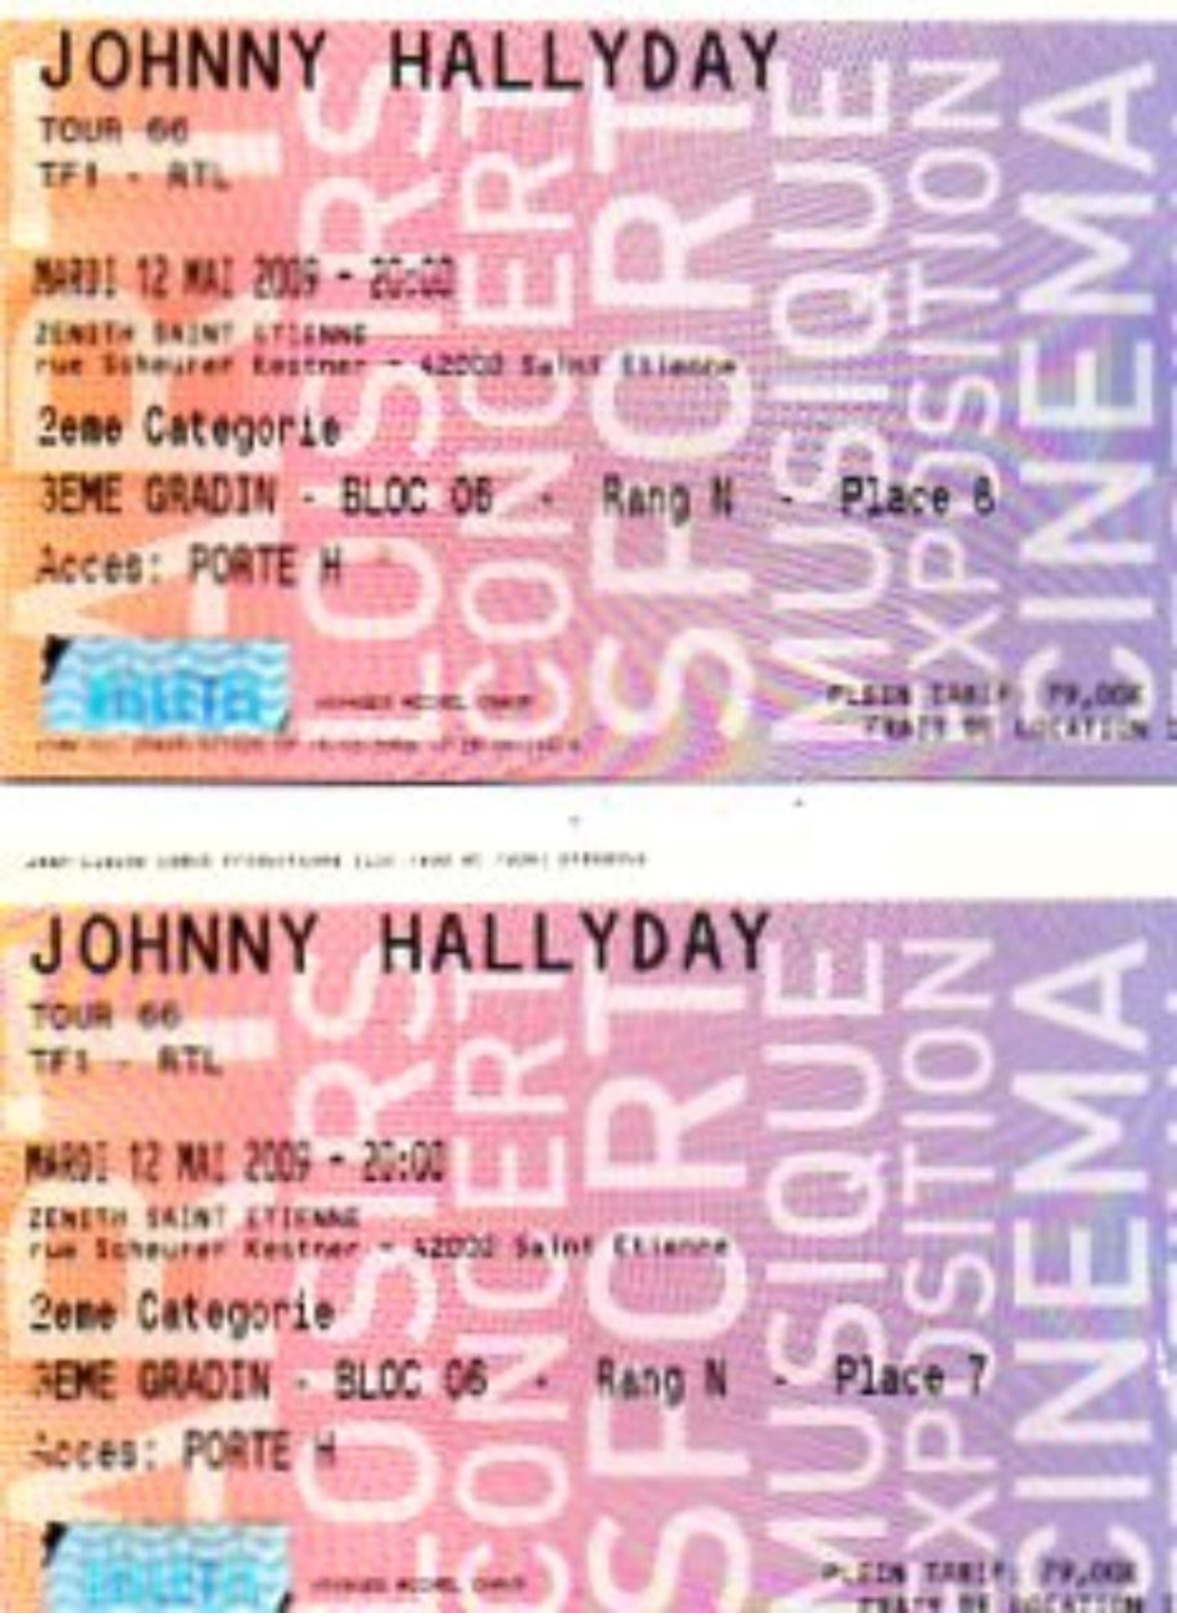 JOHNNY HALLYDAY  Lot 2 Tickets  Concert  2009  Tour 66  Mardi 12/05/2009 St ETIENNE Plein Tarif 79 Euro - Concerttickets